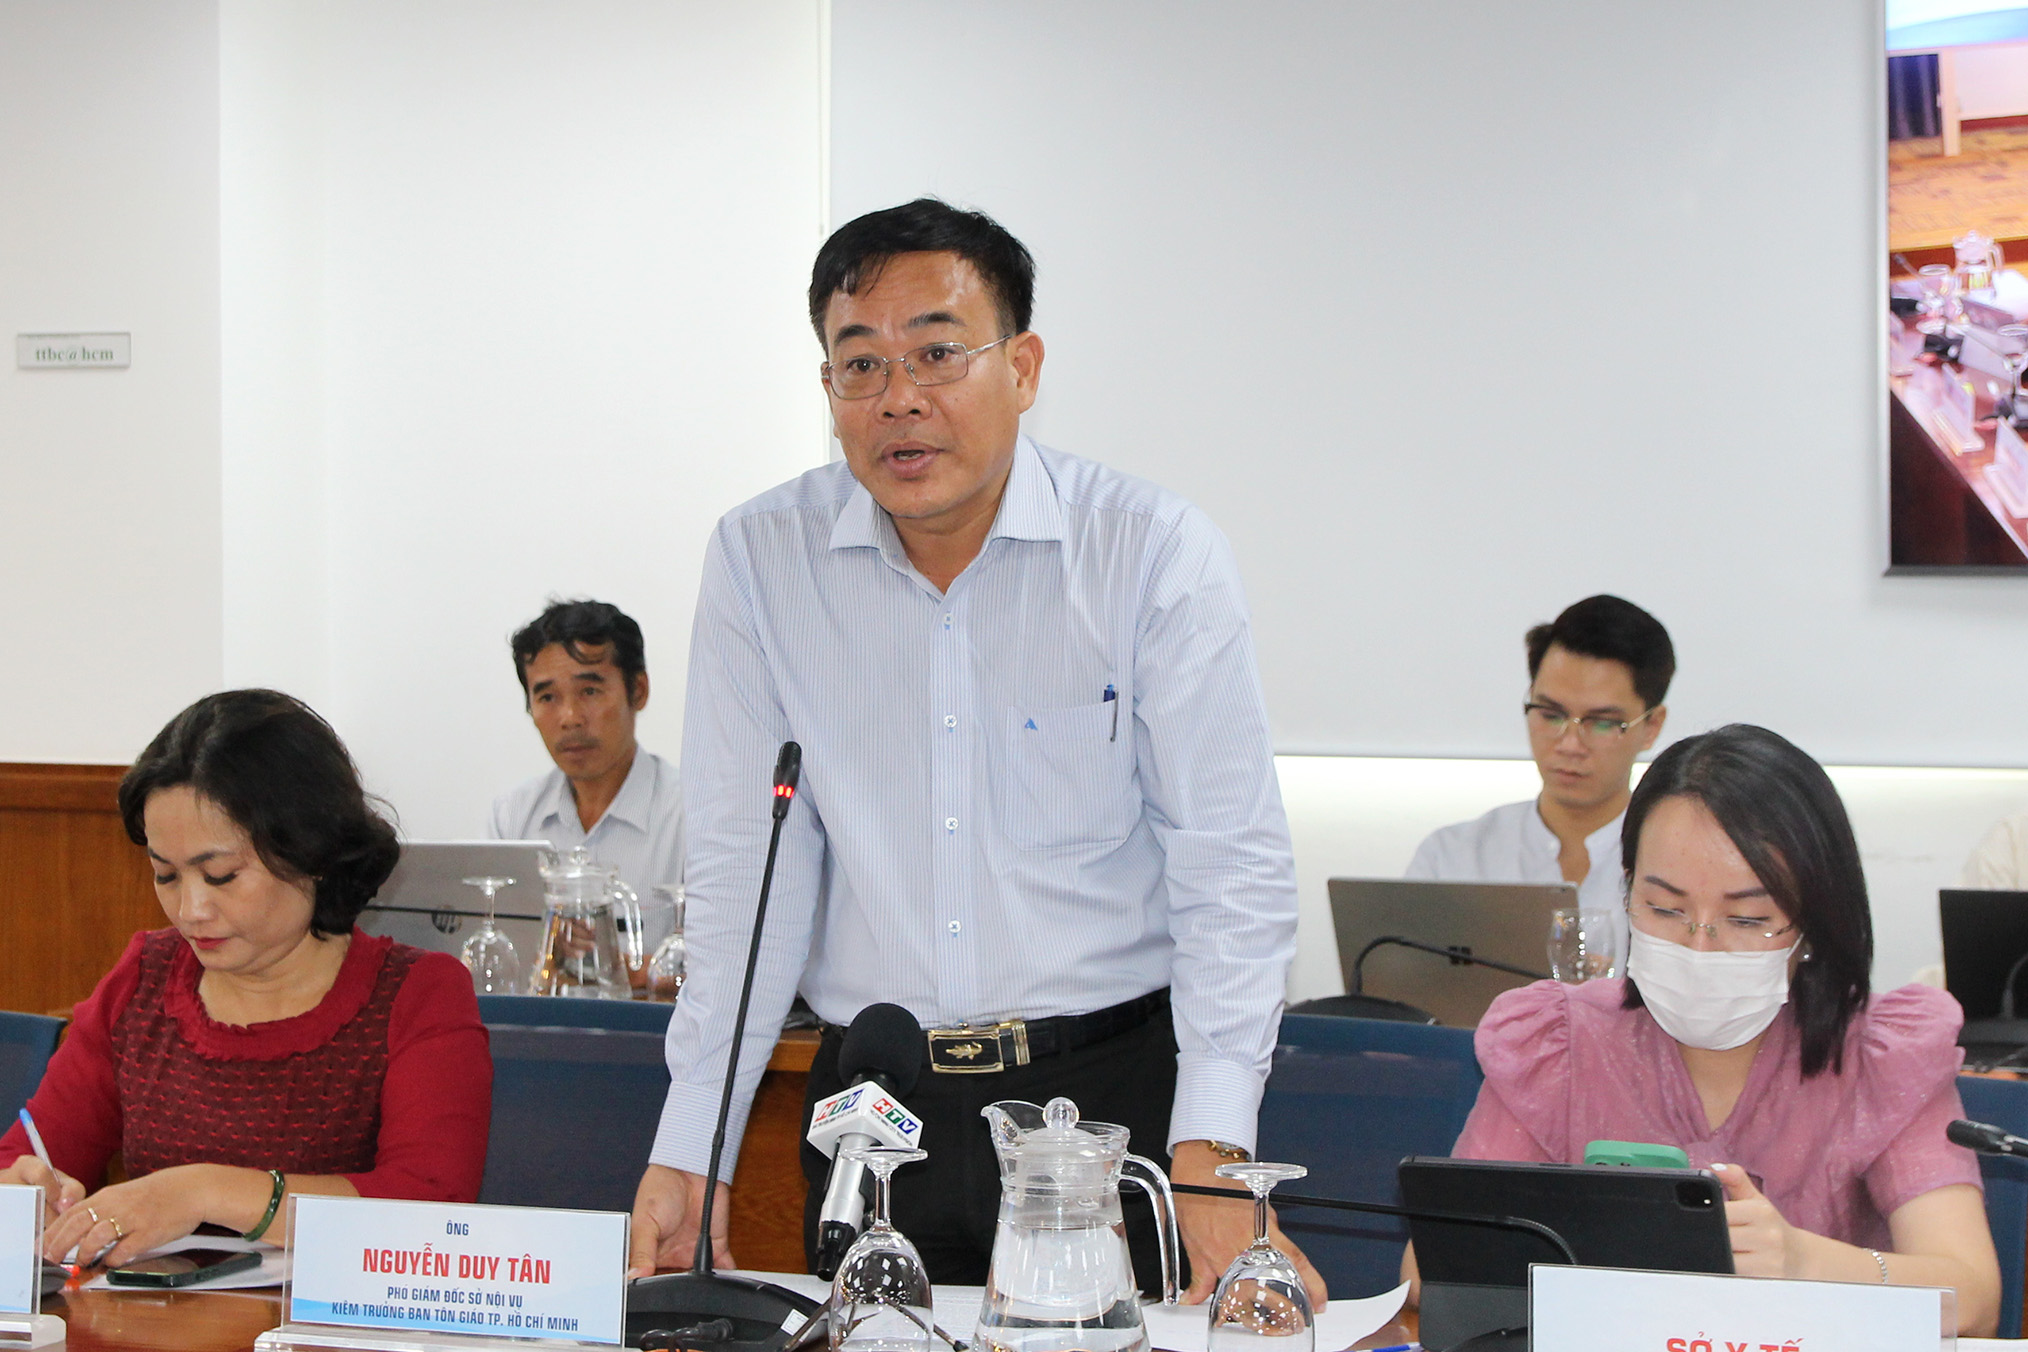 Đồng chí Nguyễn Duy Tân – Phó Giám đốc Sở Nội TP. Hồ Chí Minh phát biểu tại buổi họp báo (Ảnh: H.H).